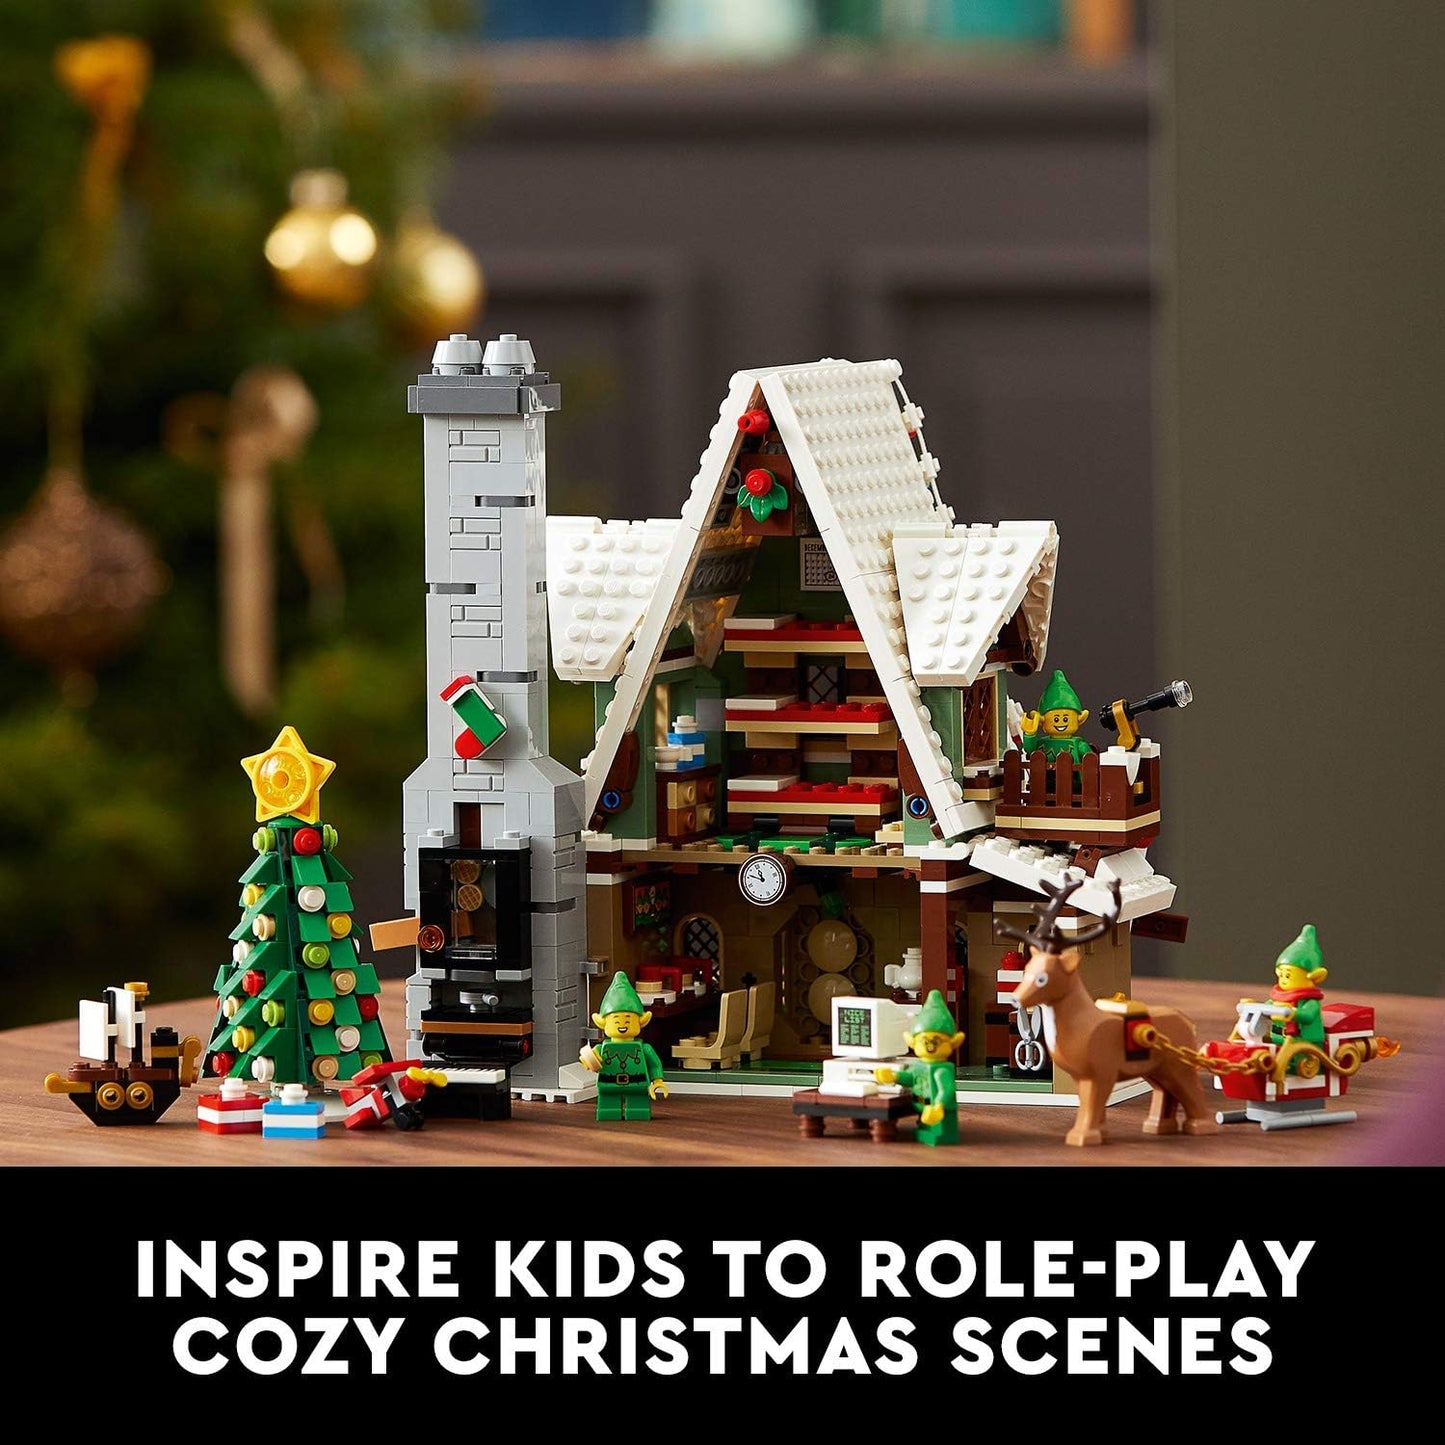 LEGO Seasonal Elf Clubhouse Set 10275, 18+ years